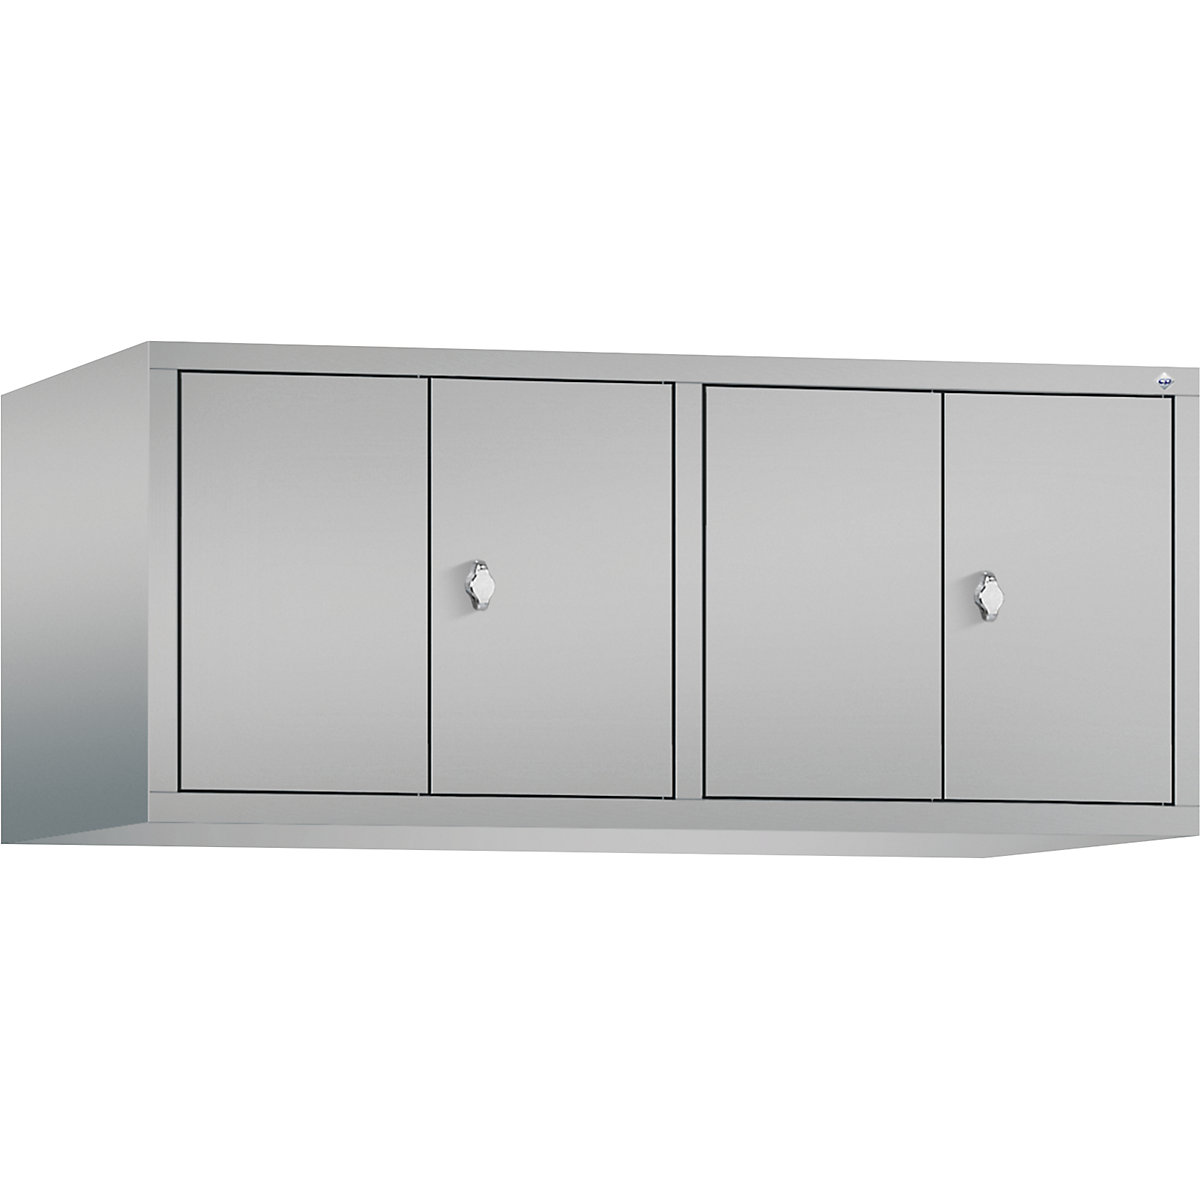 Altillo CLASSIC, puertas batientes que cierran al ras entre sí – C+P, 4 compartimentos, anchura de compartimento 300 mm, aluminio blanco